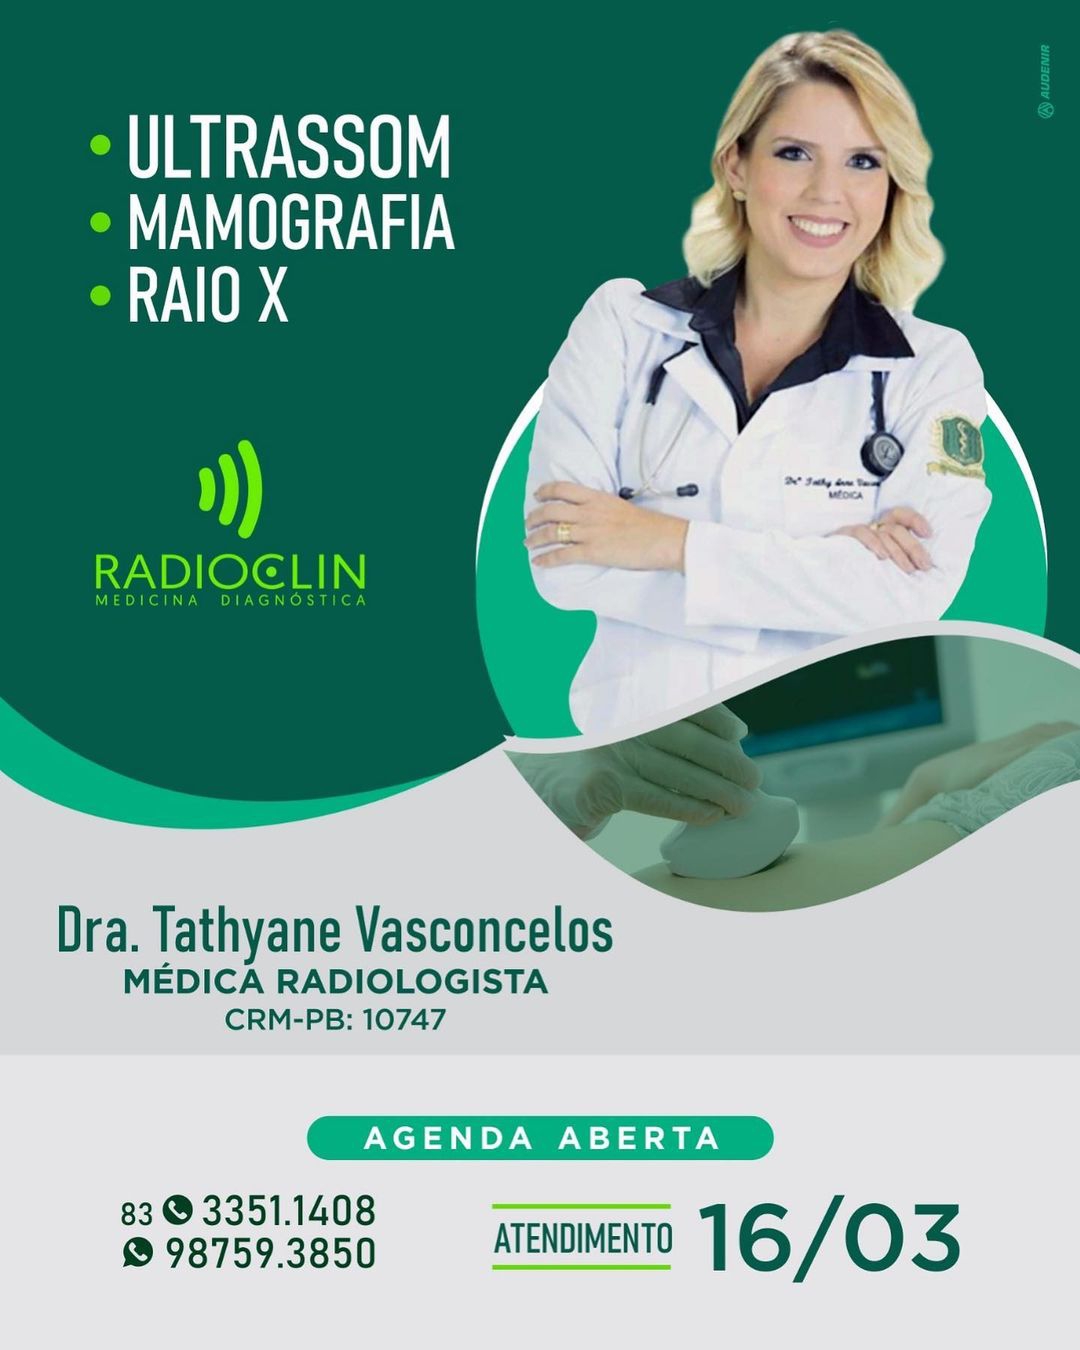 1005502727 Radiolcin vem apresentar a Dra Tathyane Vasconcelos médica radiologista com agenda aberta no dia 16 de março.